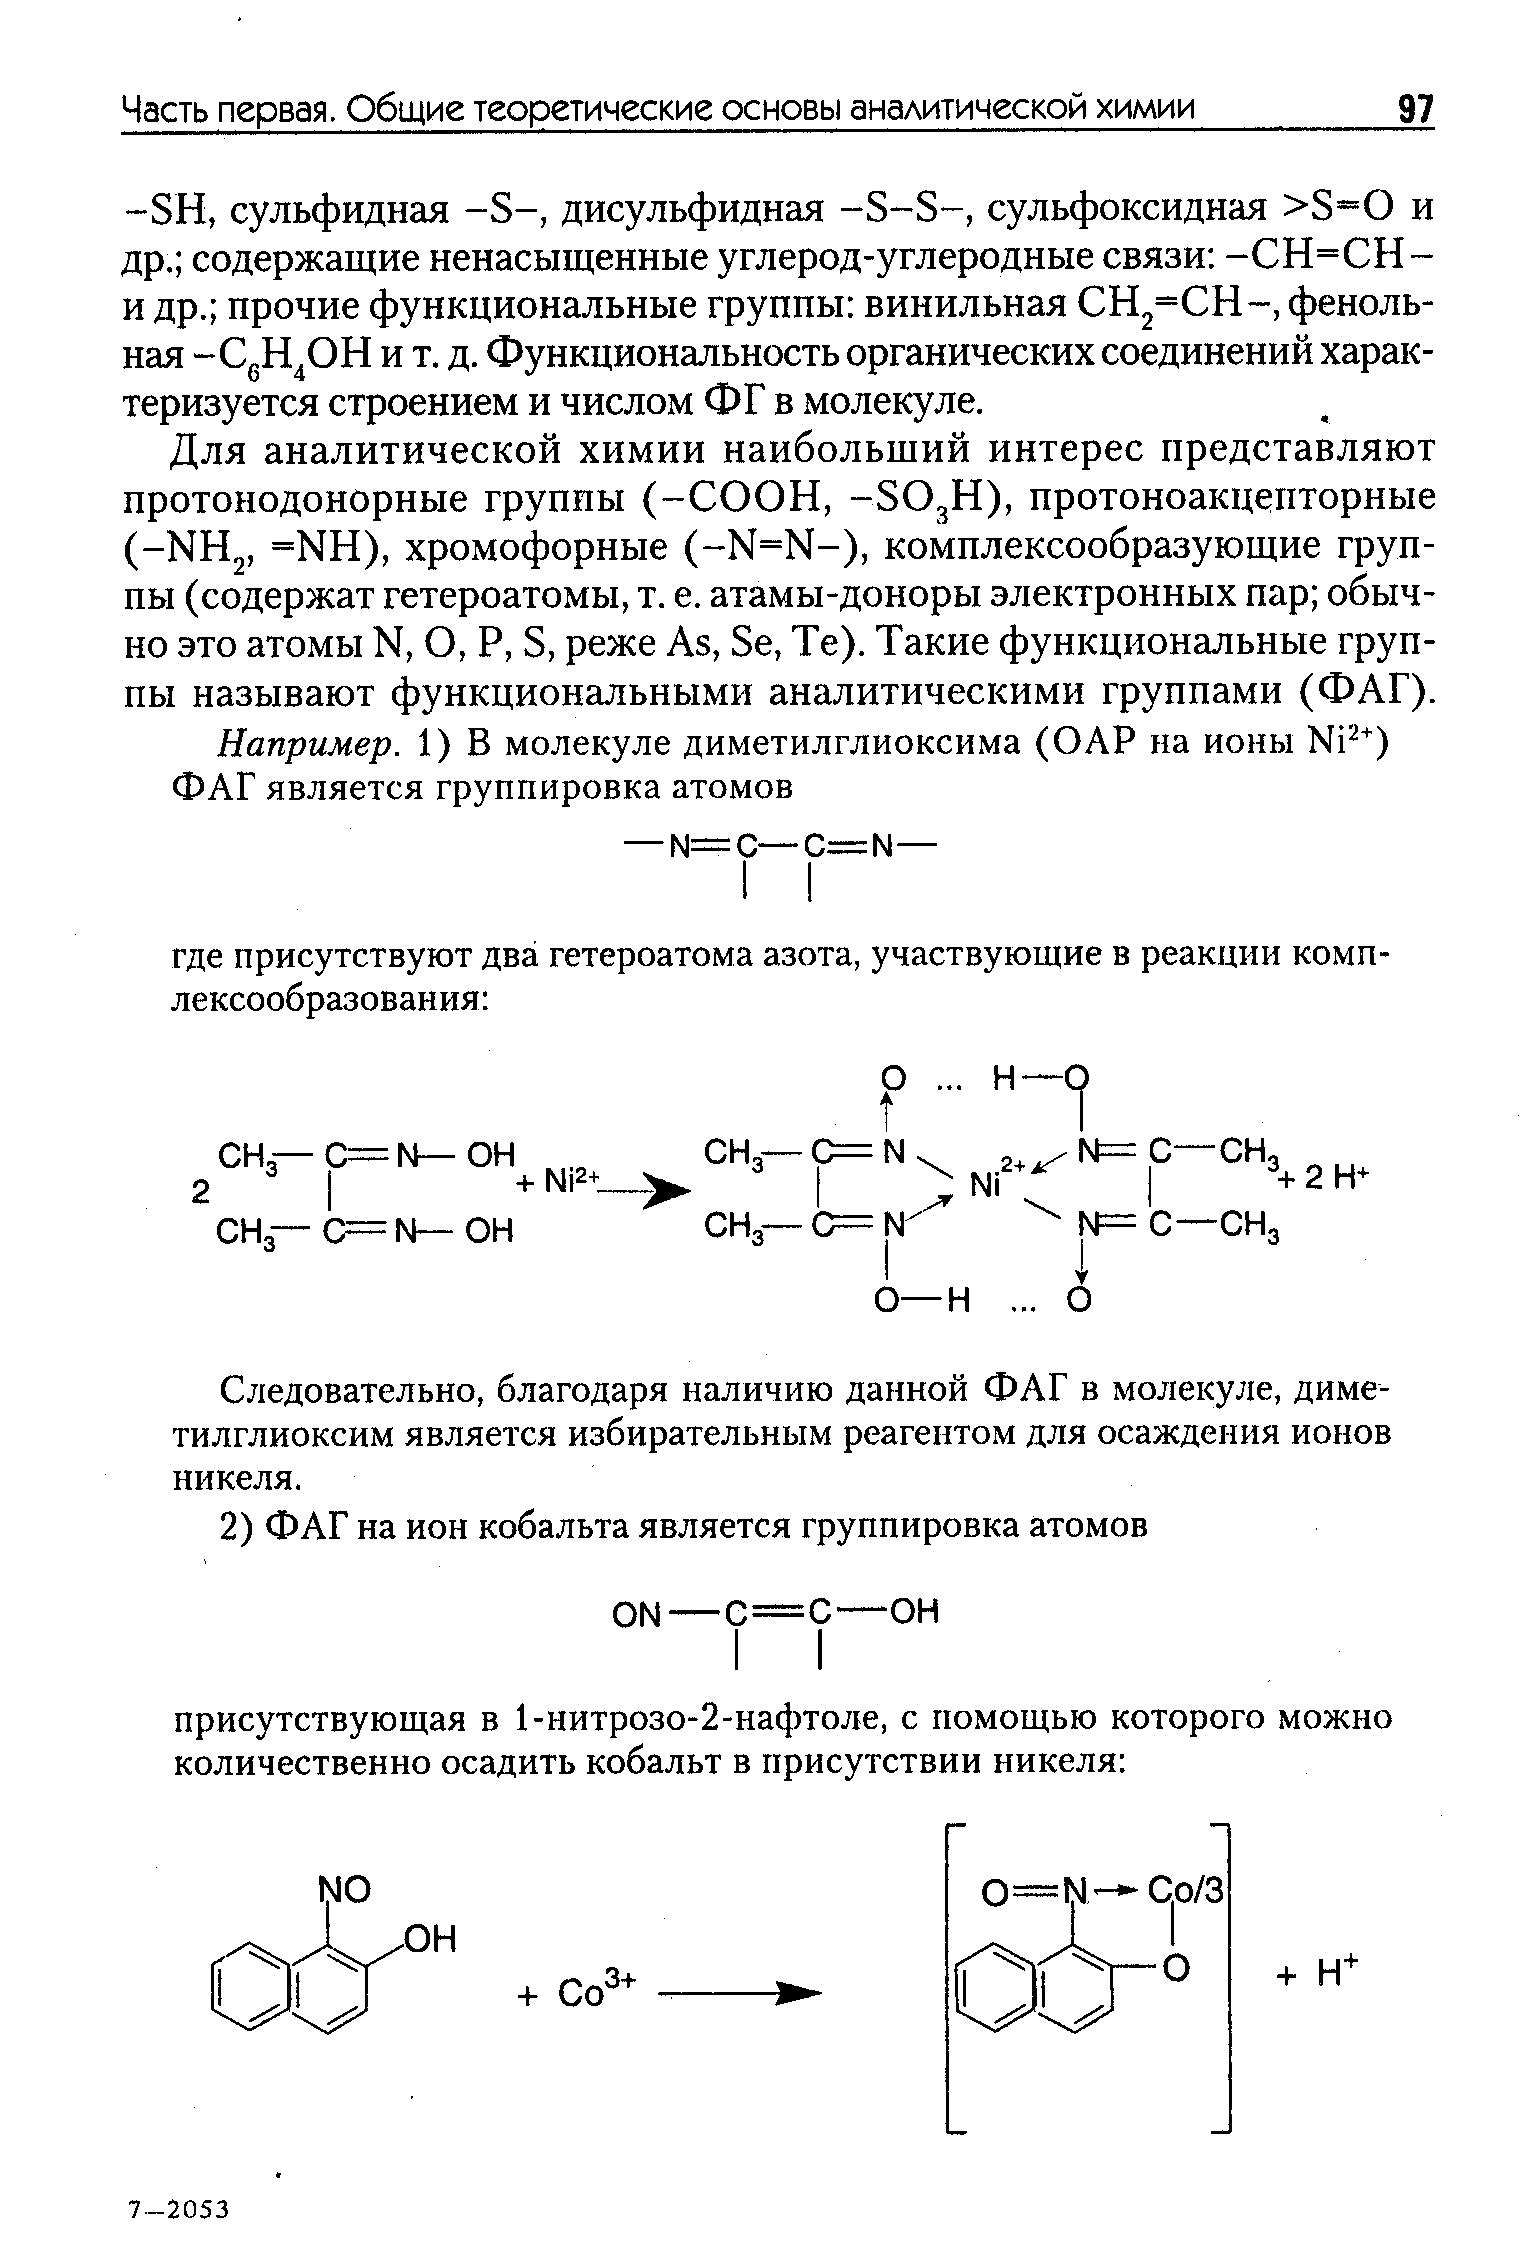 Для аналитической химии наибольщий интерес представляют протонодонорные группы (-СООН, -5О3Н), протоноакцепторные (-НН , =НН), хромофорные (-М=М-), комплексообразующие группы (содержат гетероатомы, т. е. атамы-доноры электронных пар обычно это атомы Ы, О, Р, 5, реже Аз, 8е, Те). Такие функциональные группы называют функциональными аналитическими группами (ФАГ).